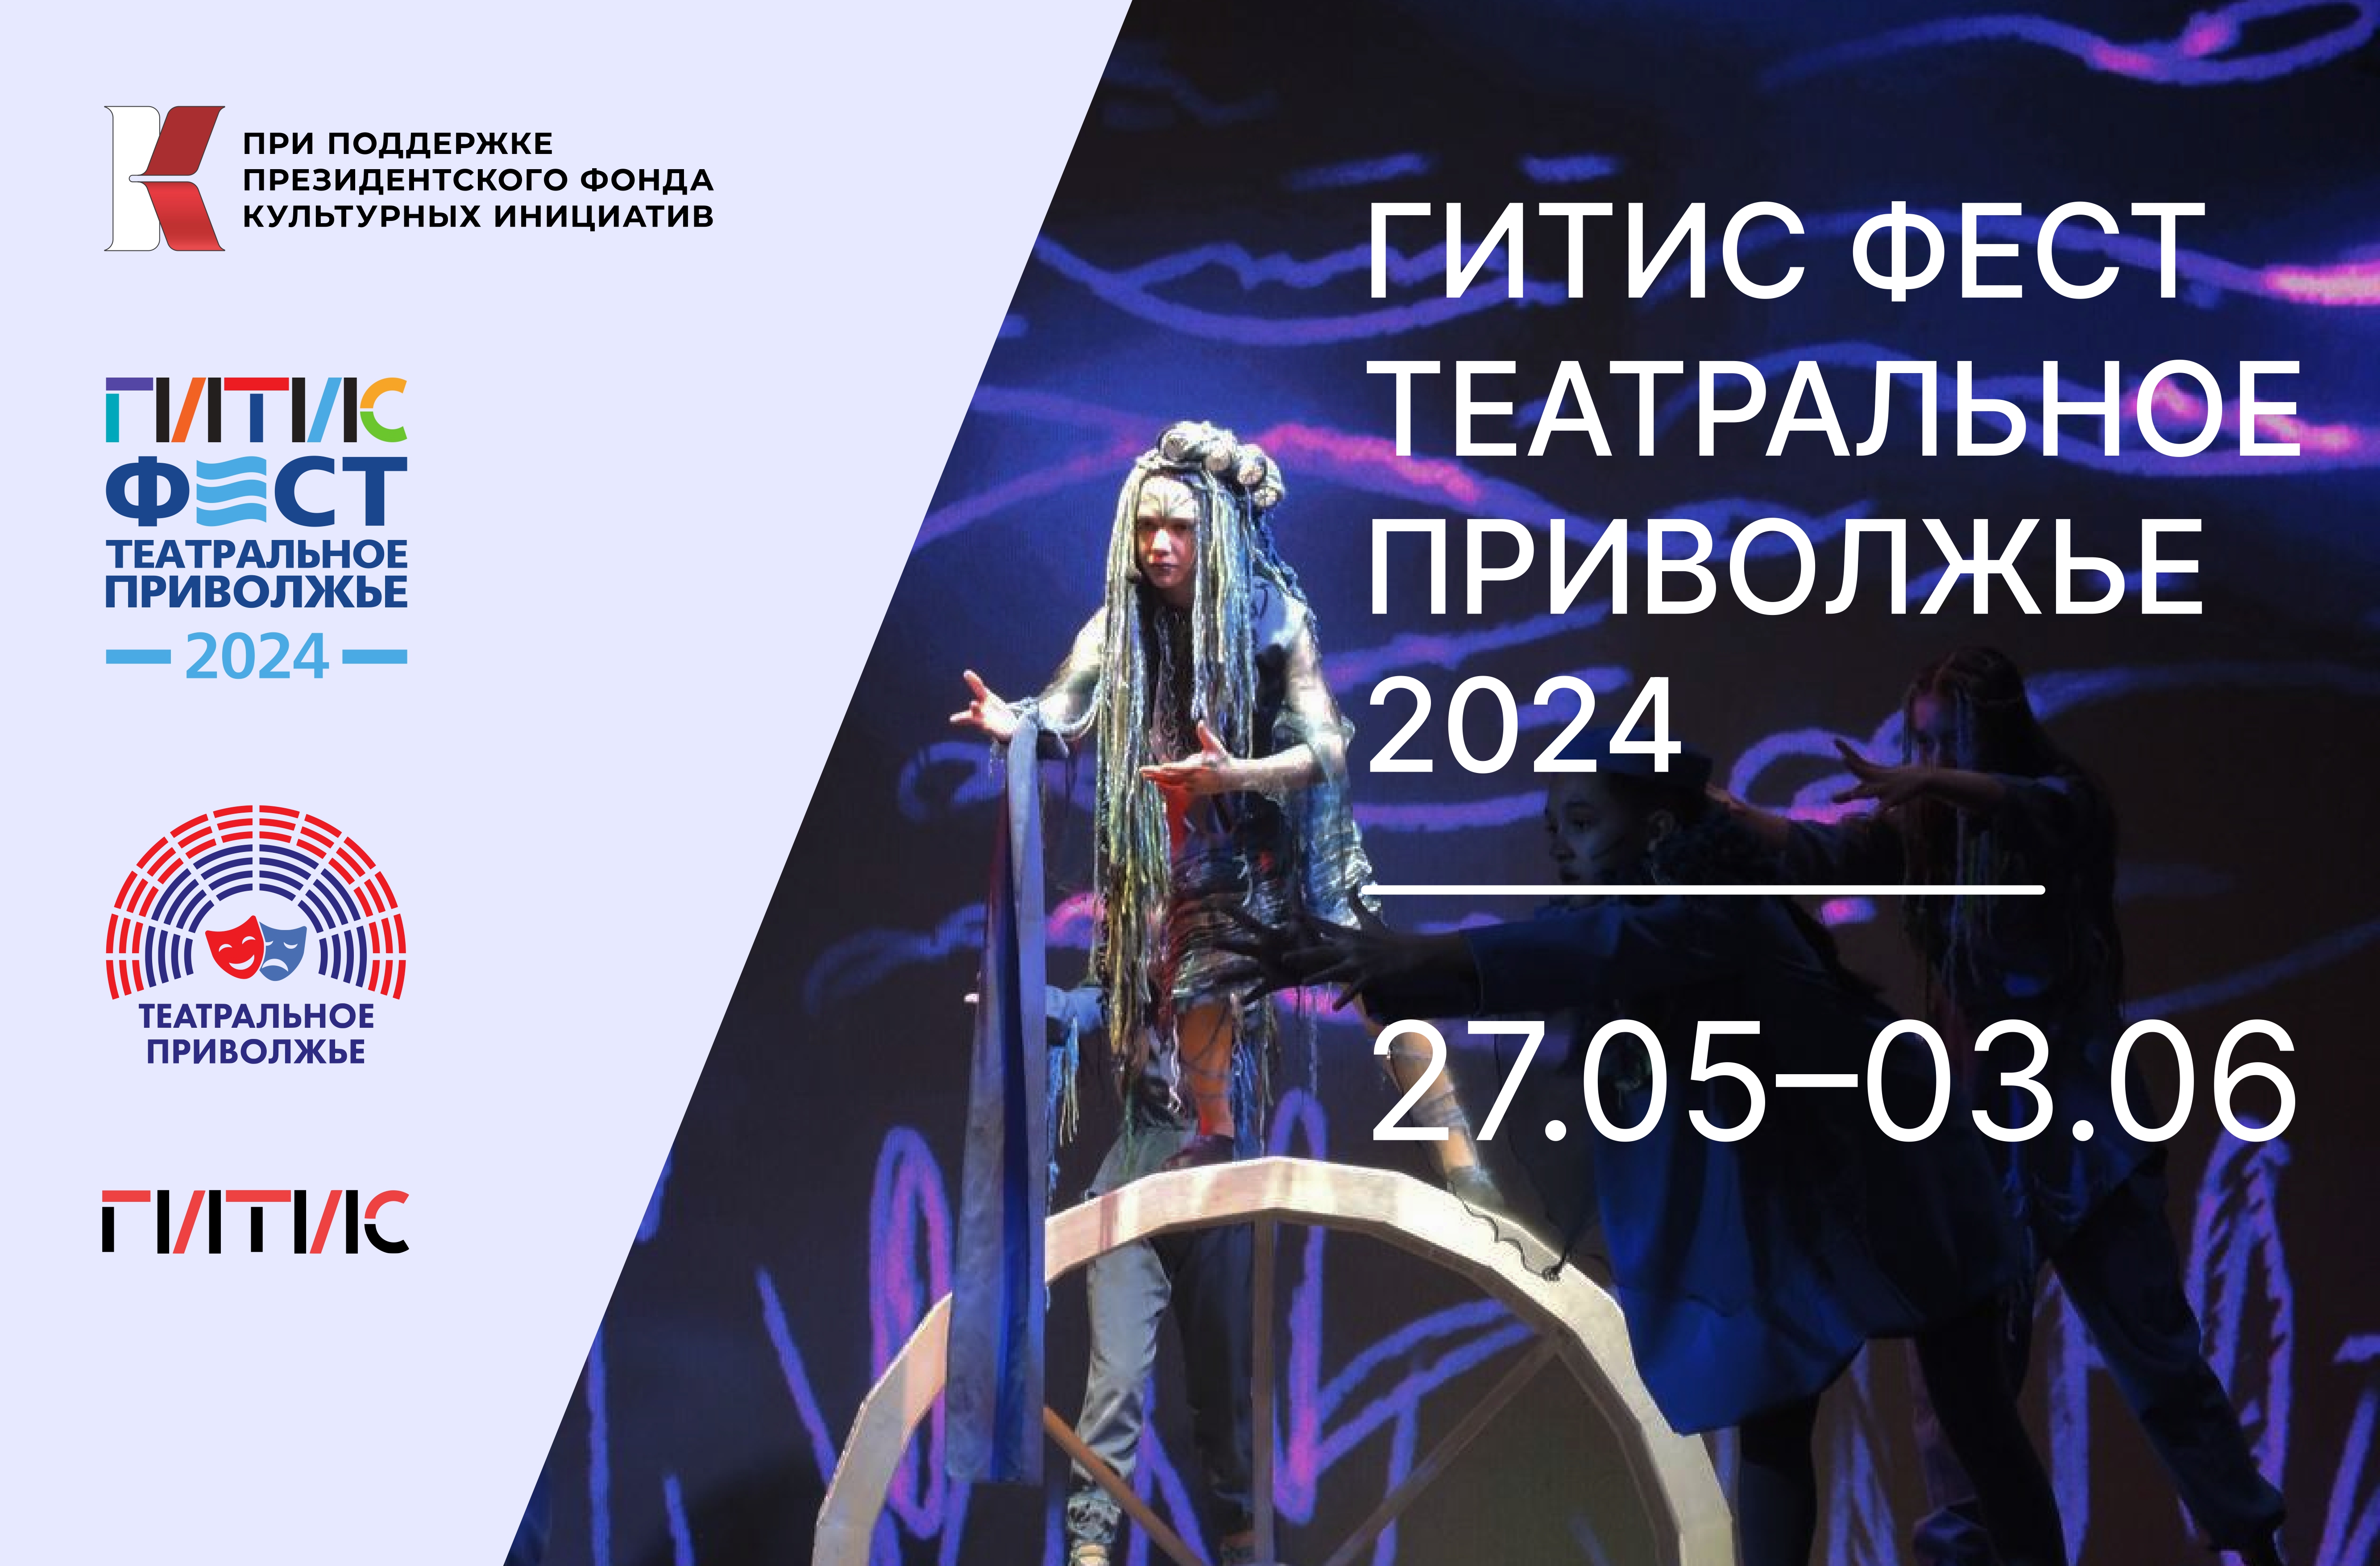 Победители Фестиваля «Театральное Приволжье» проведут 8 дней в творческой поездке на теплоходе с мастерами ГИТИСа.